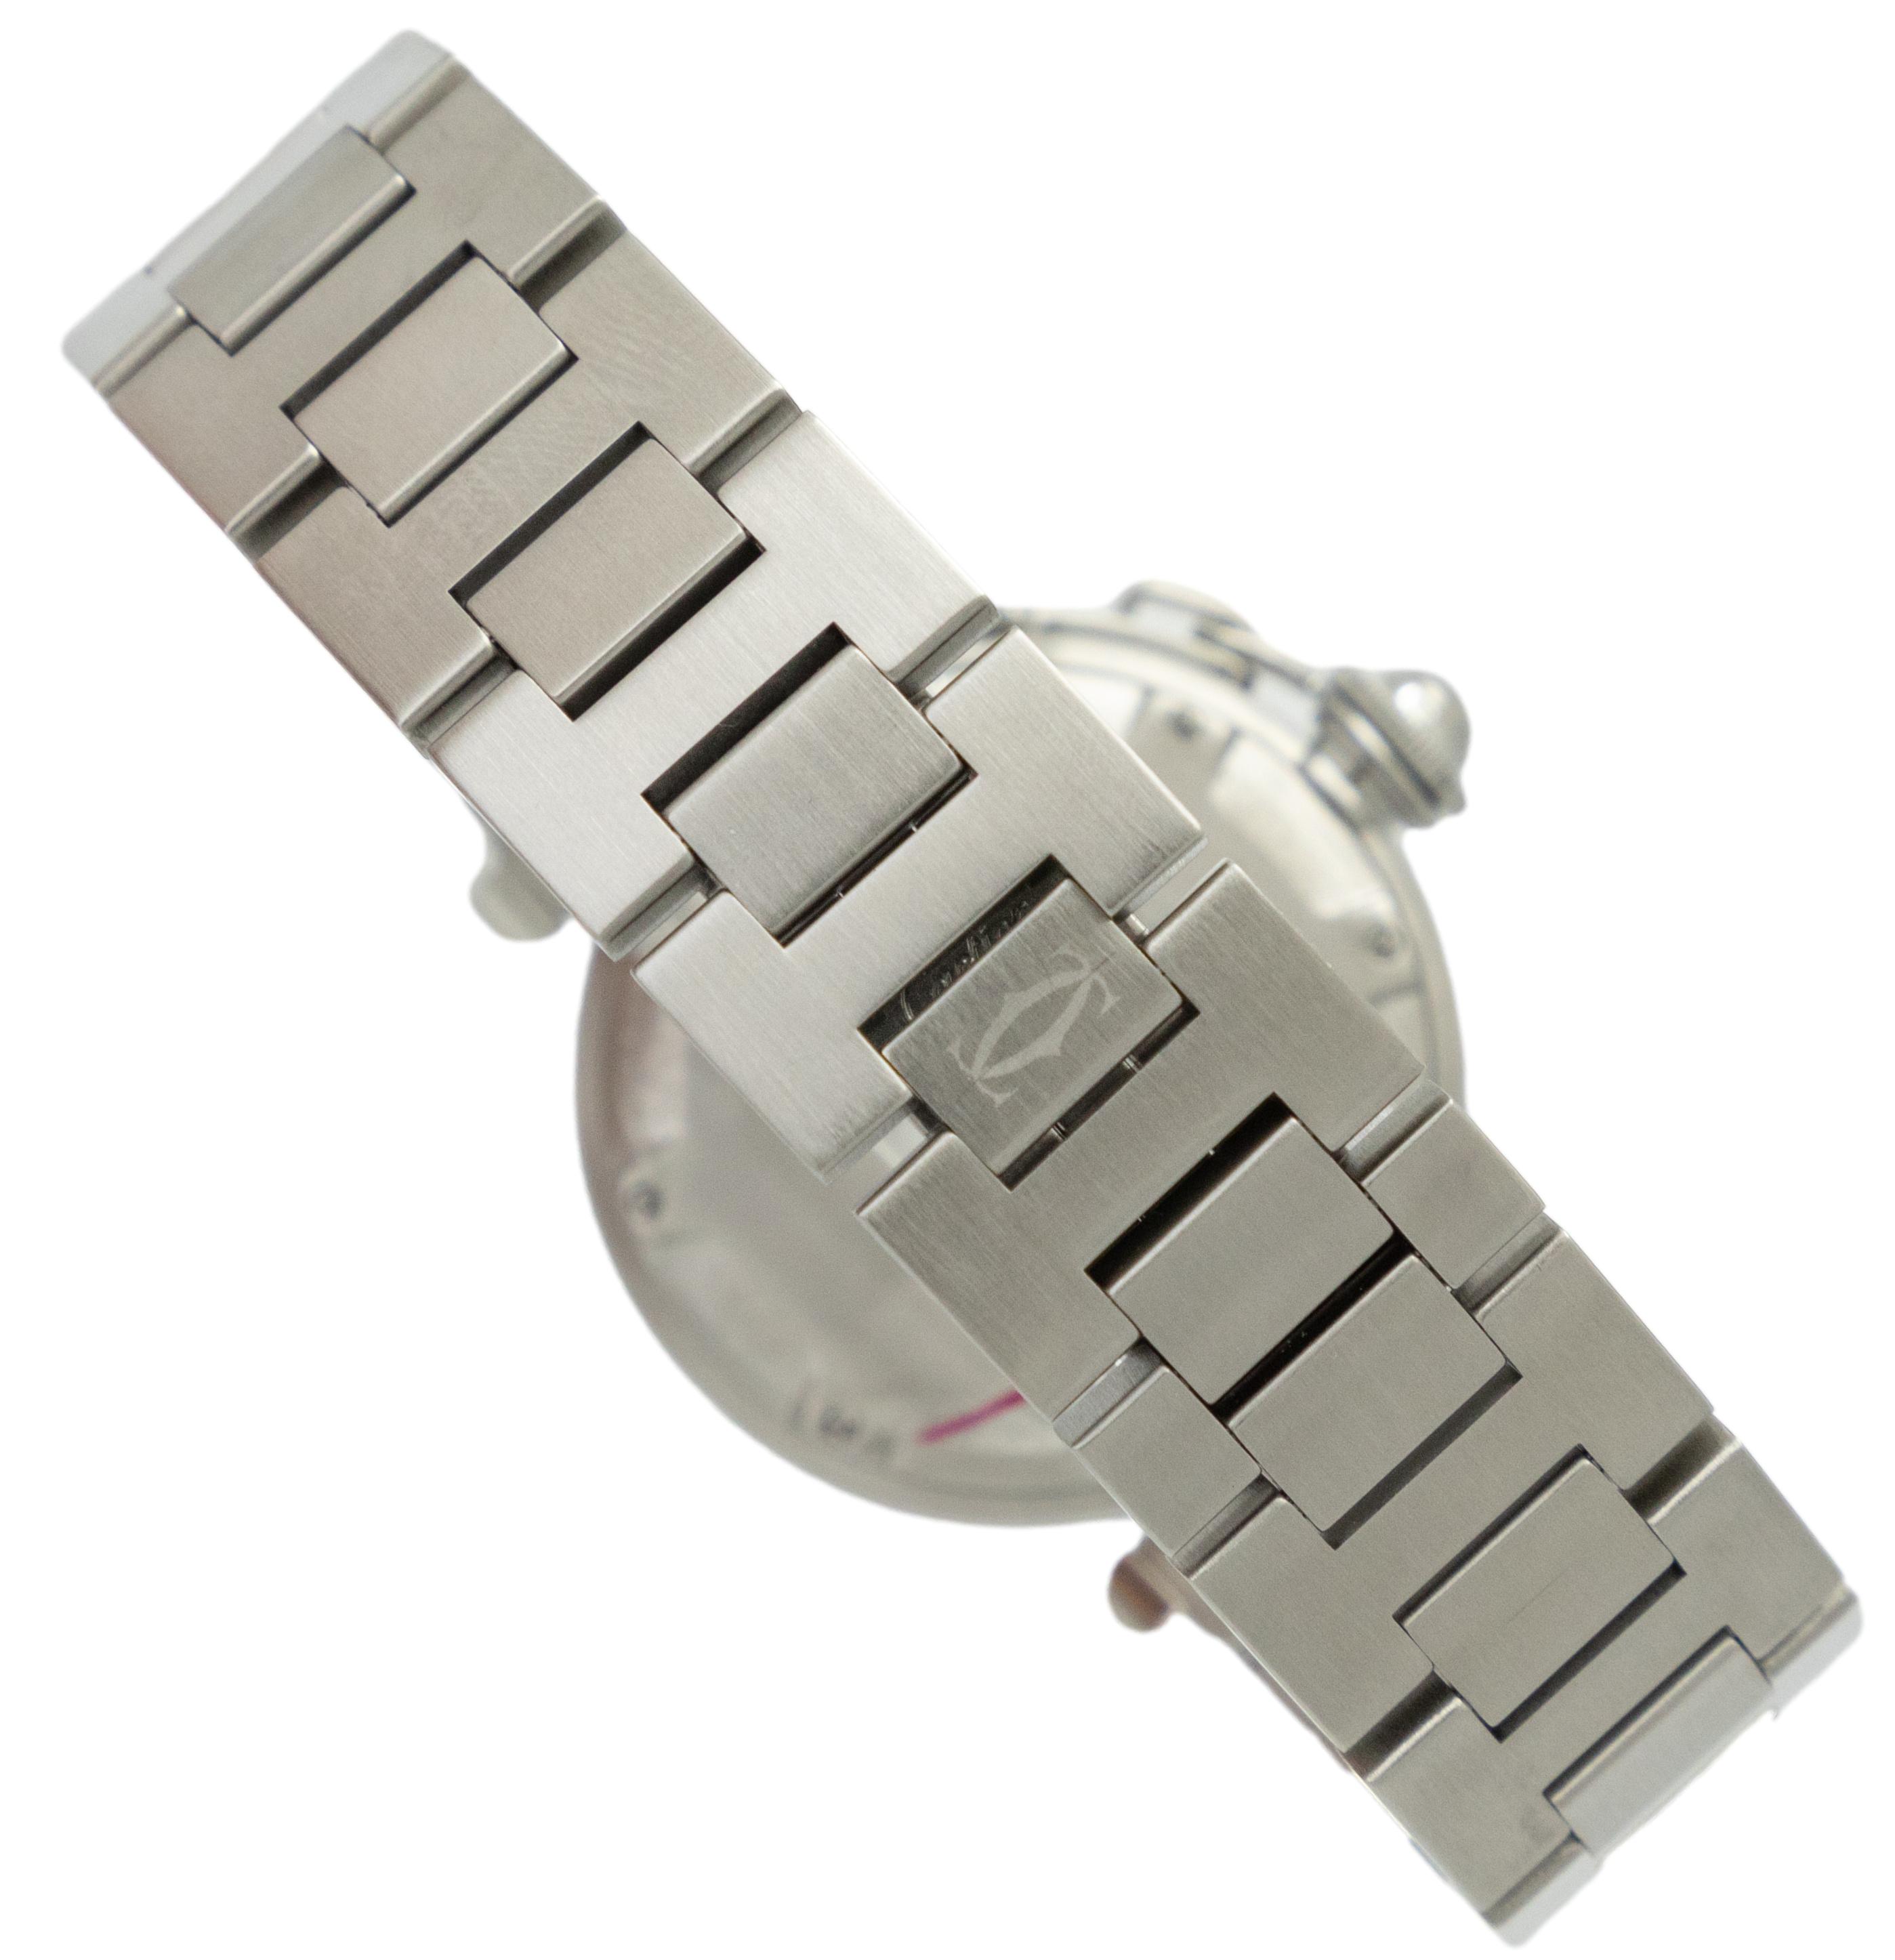 カルティエ パシャC 2324 腕時計 自動巻き 中古 メンズ レディース 